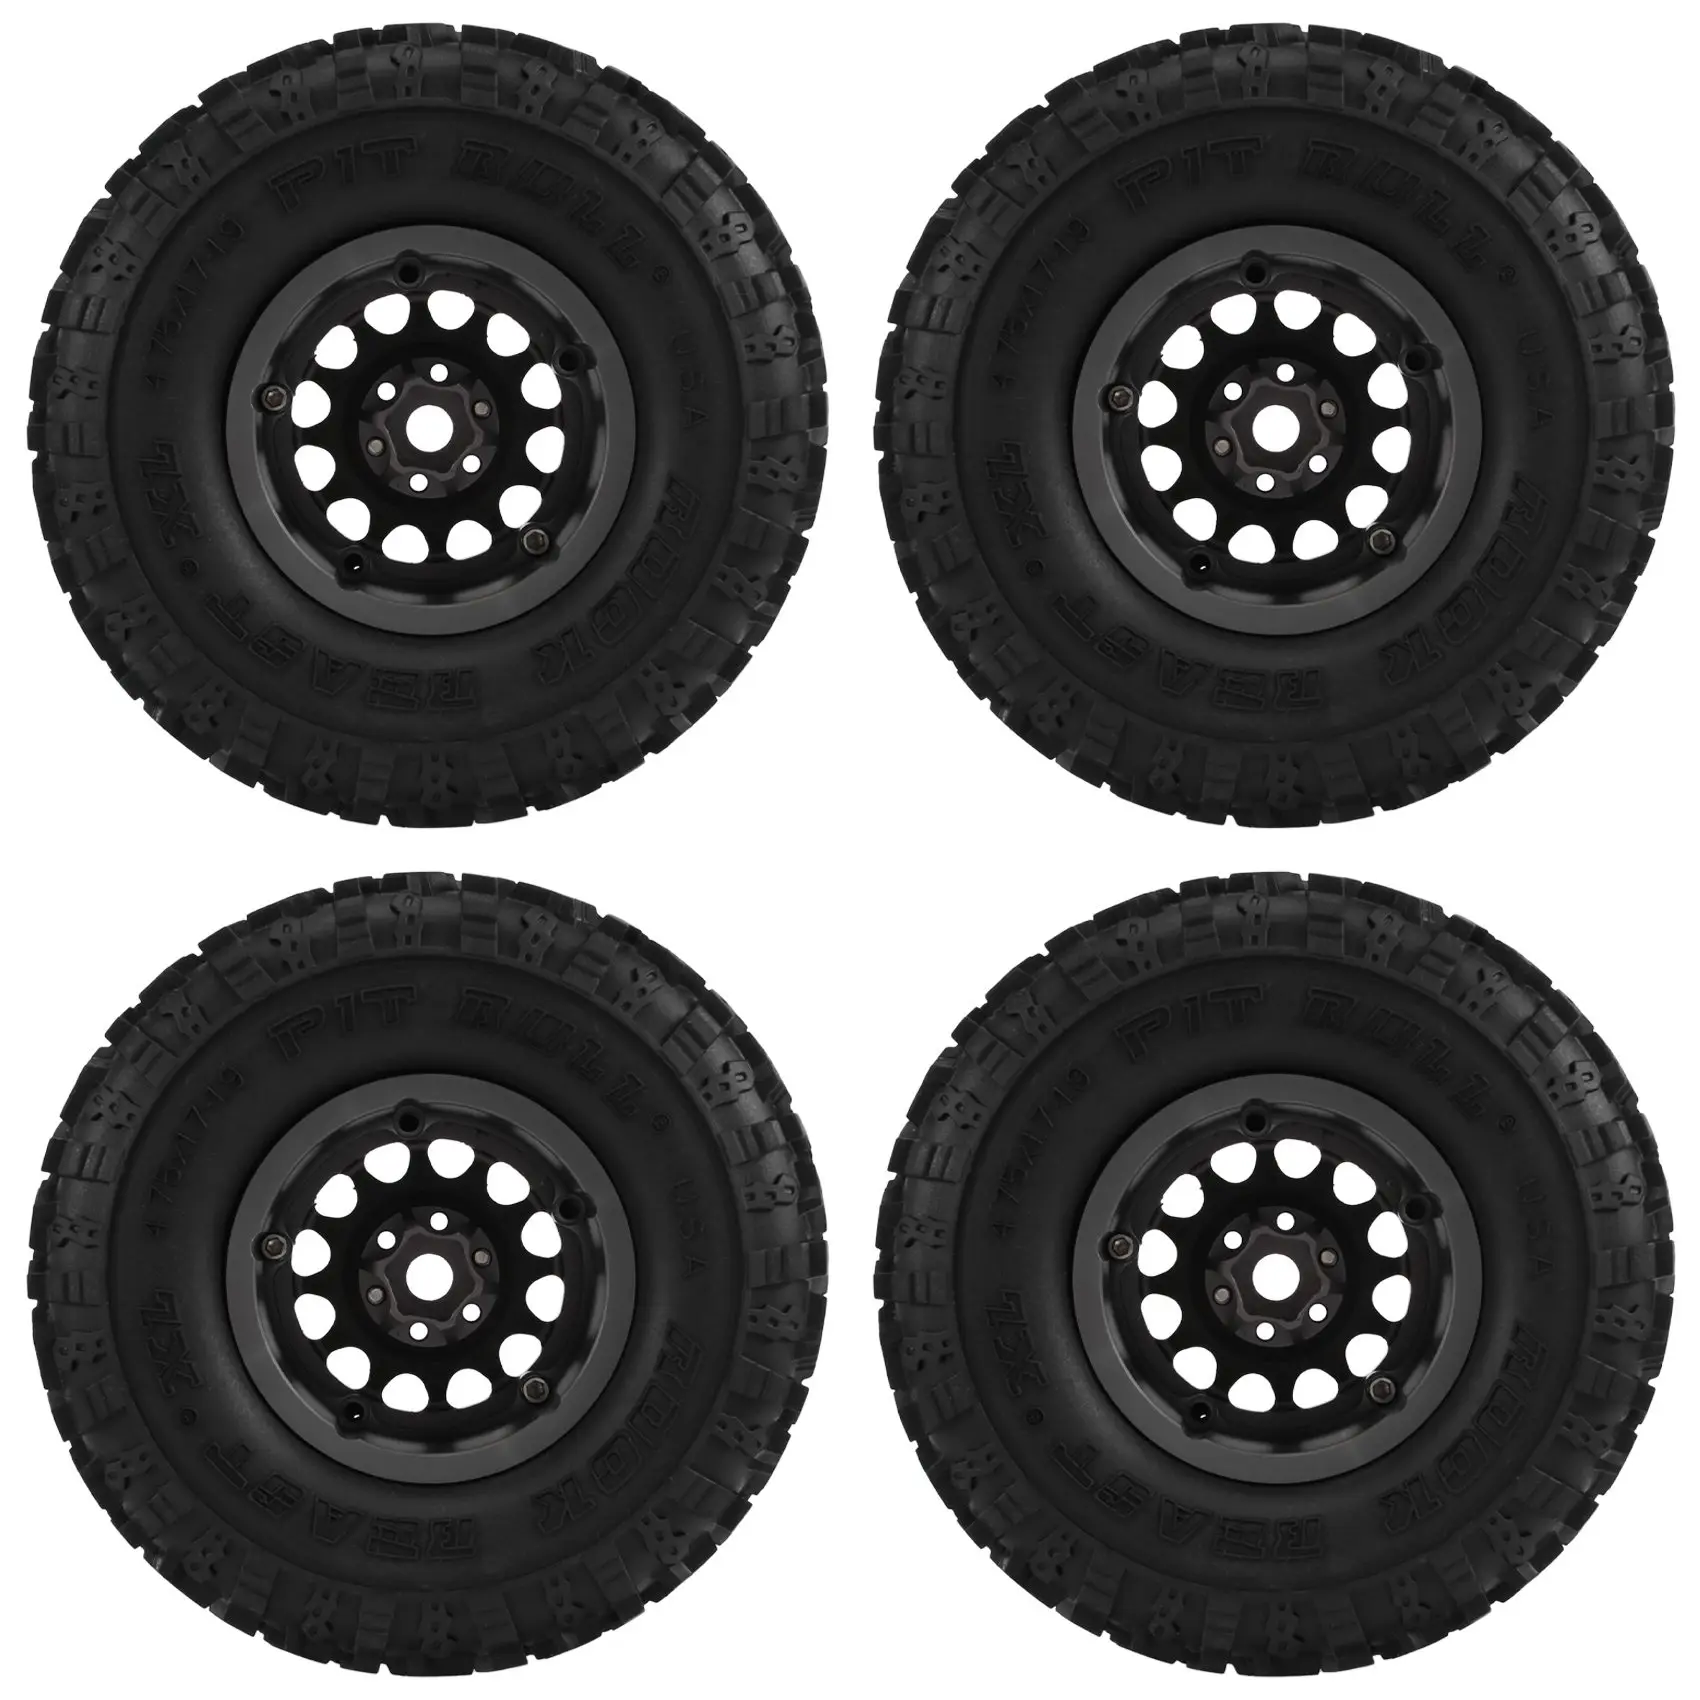 

4PCS Metal 2.2 Beadlock Wheel Rim Tires Set for 1/10 RC Crawler Car Traxxas TRX4 TRX6 Axial SCX10 RR10 Parts,Titanium